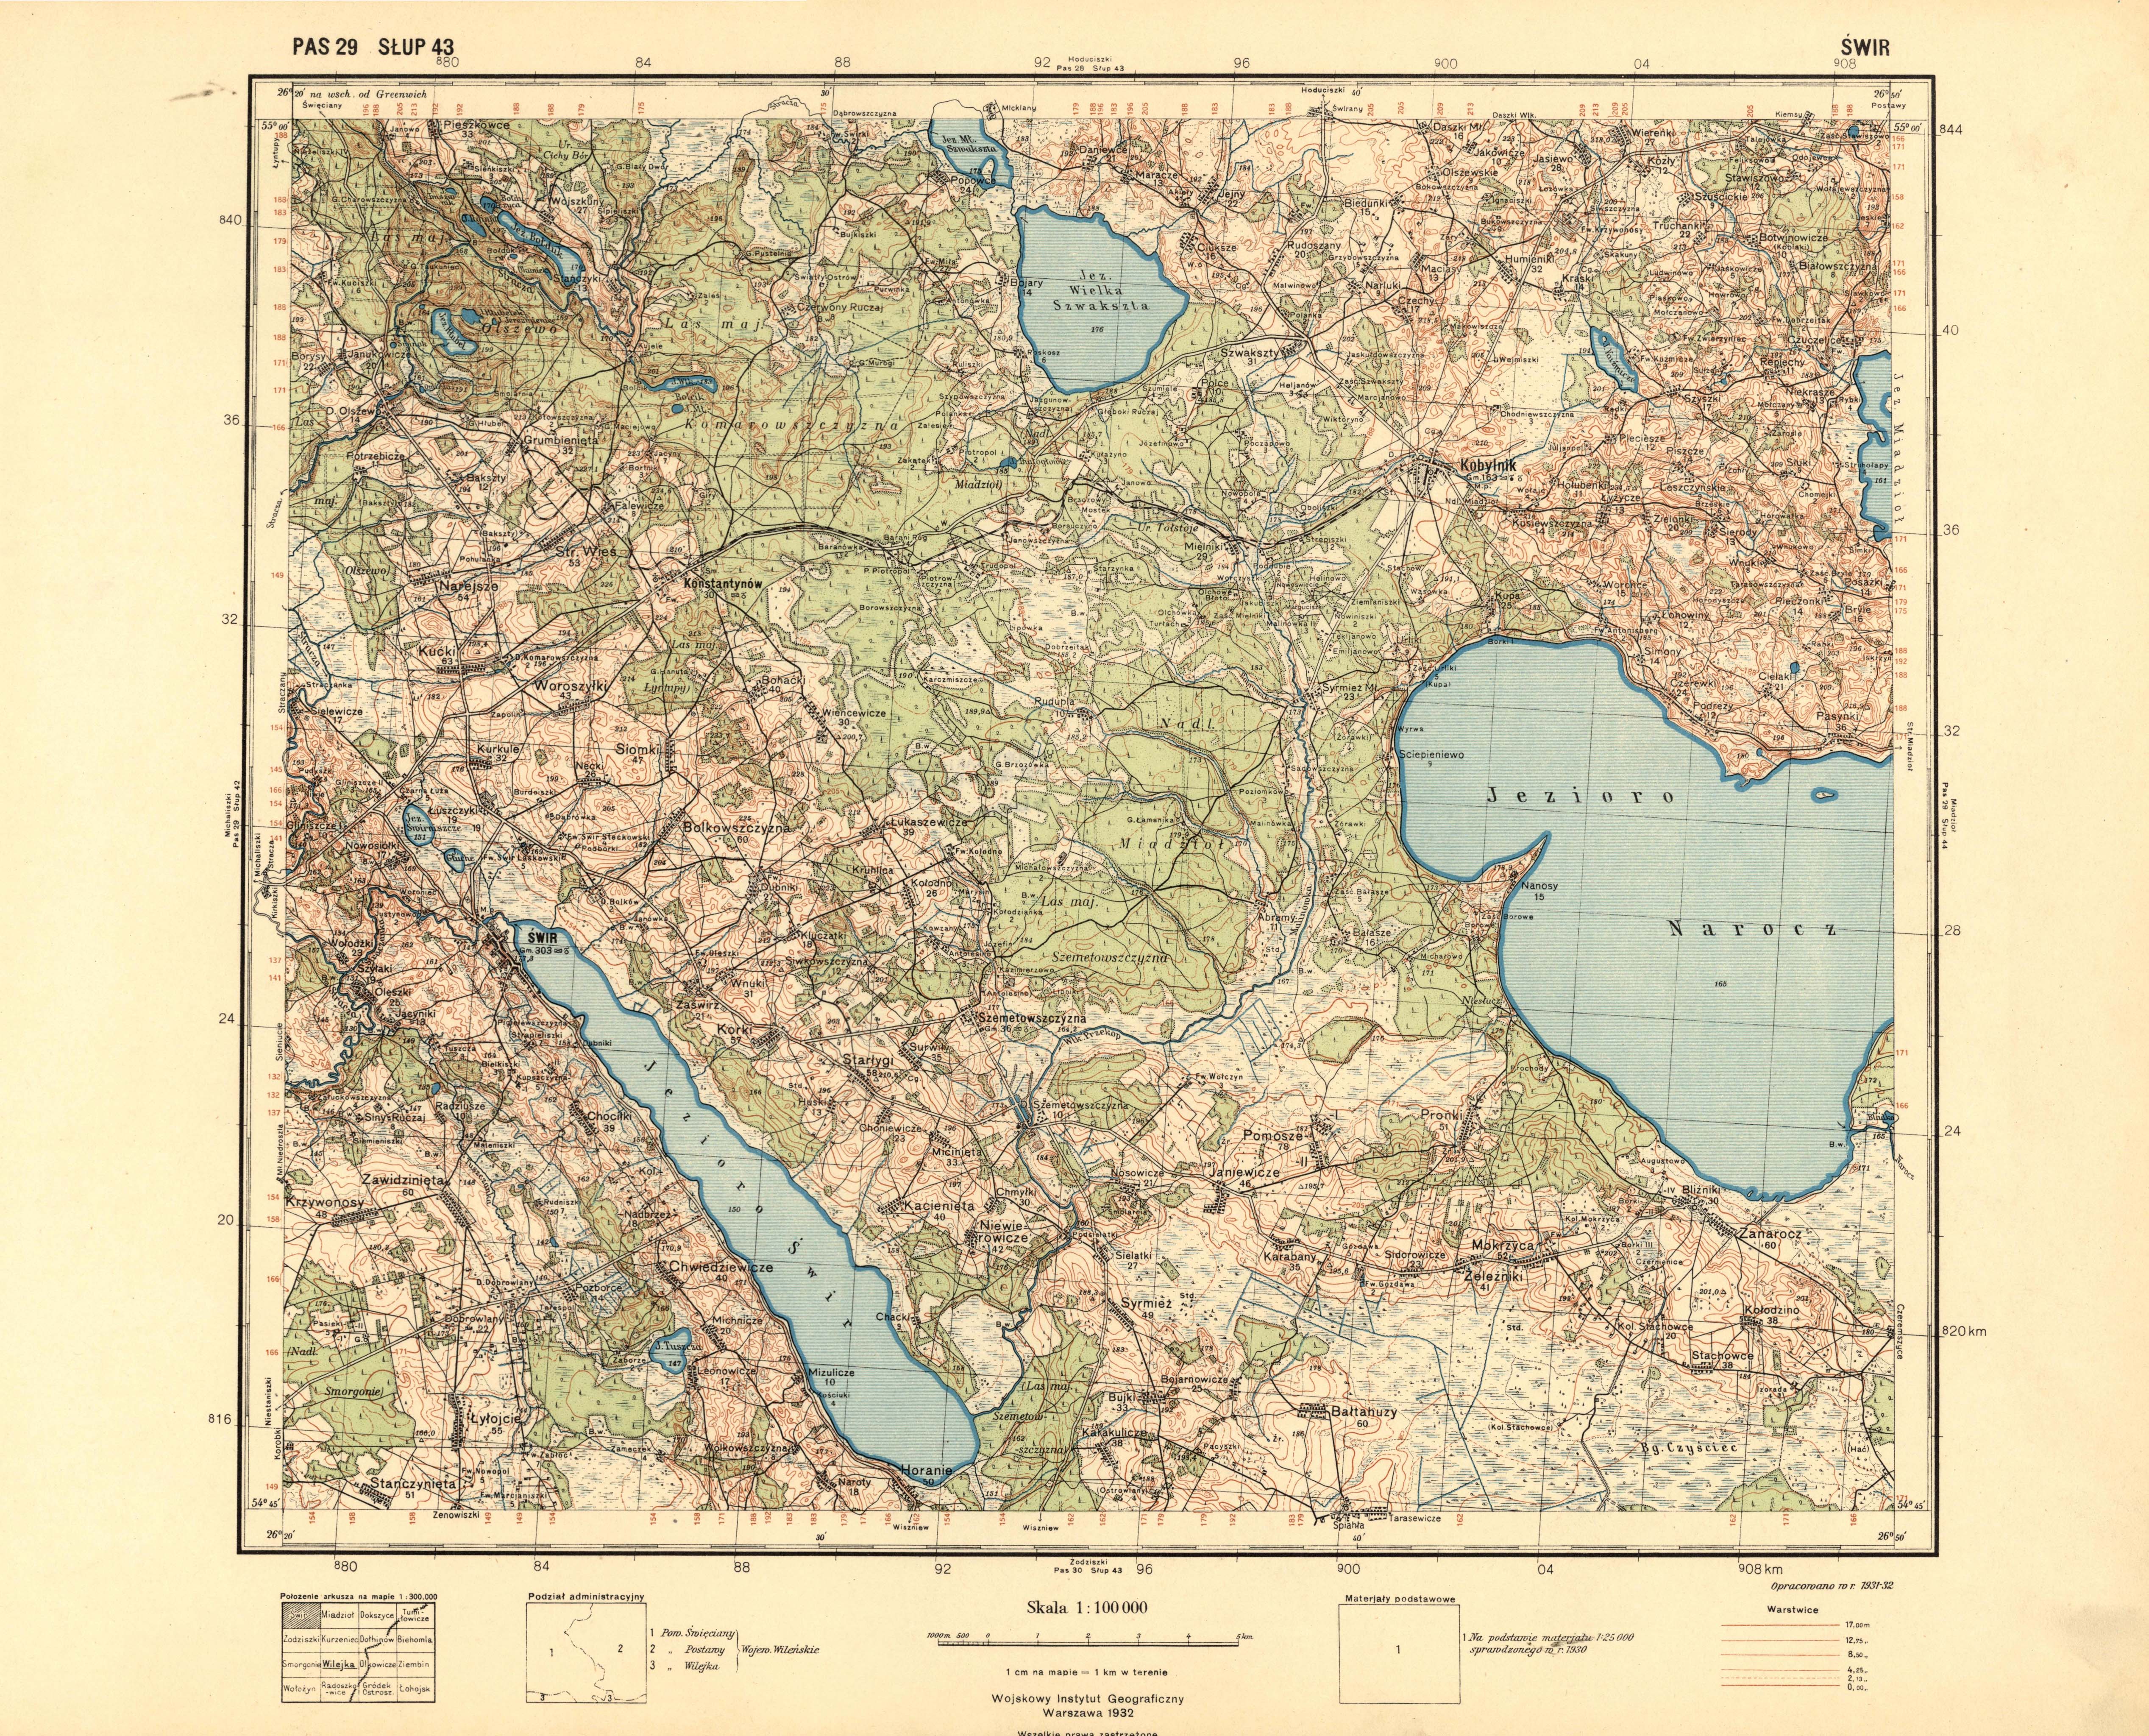 Топографическая карта татарстана 1935 года